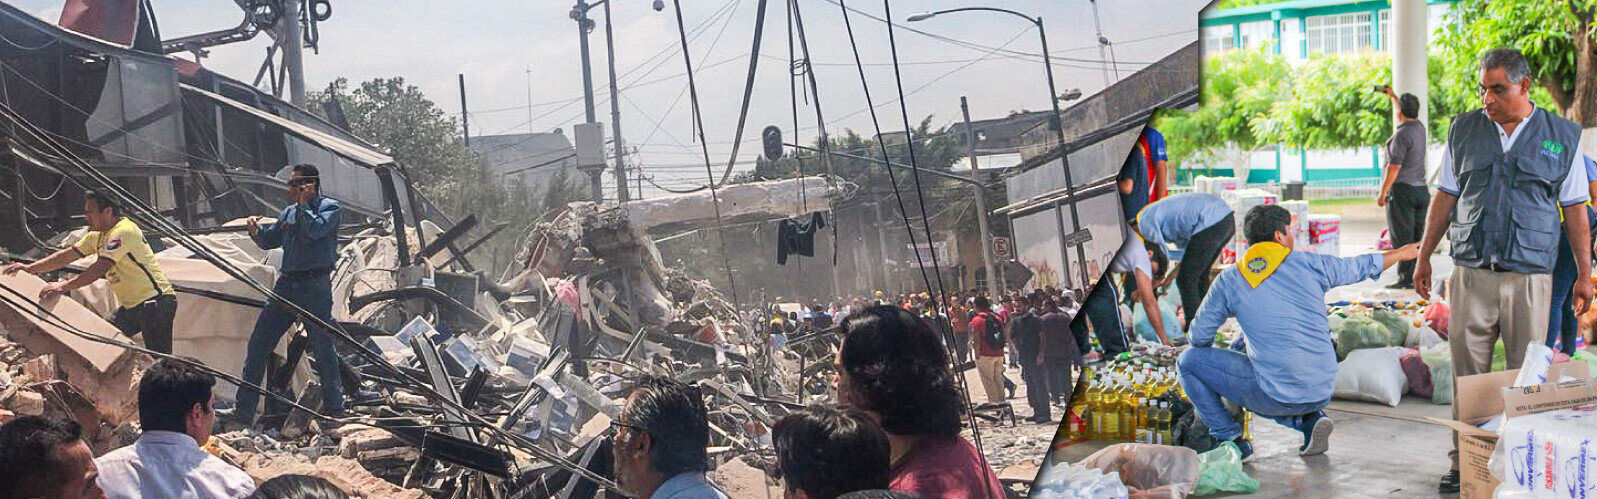 Menschen stehen vor Häuserruinen in Mexiko nach dem Erdbeben